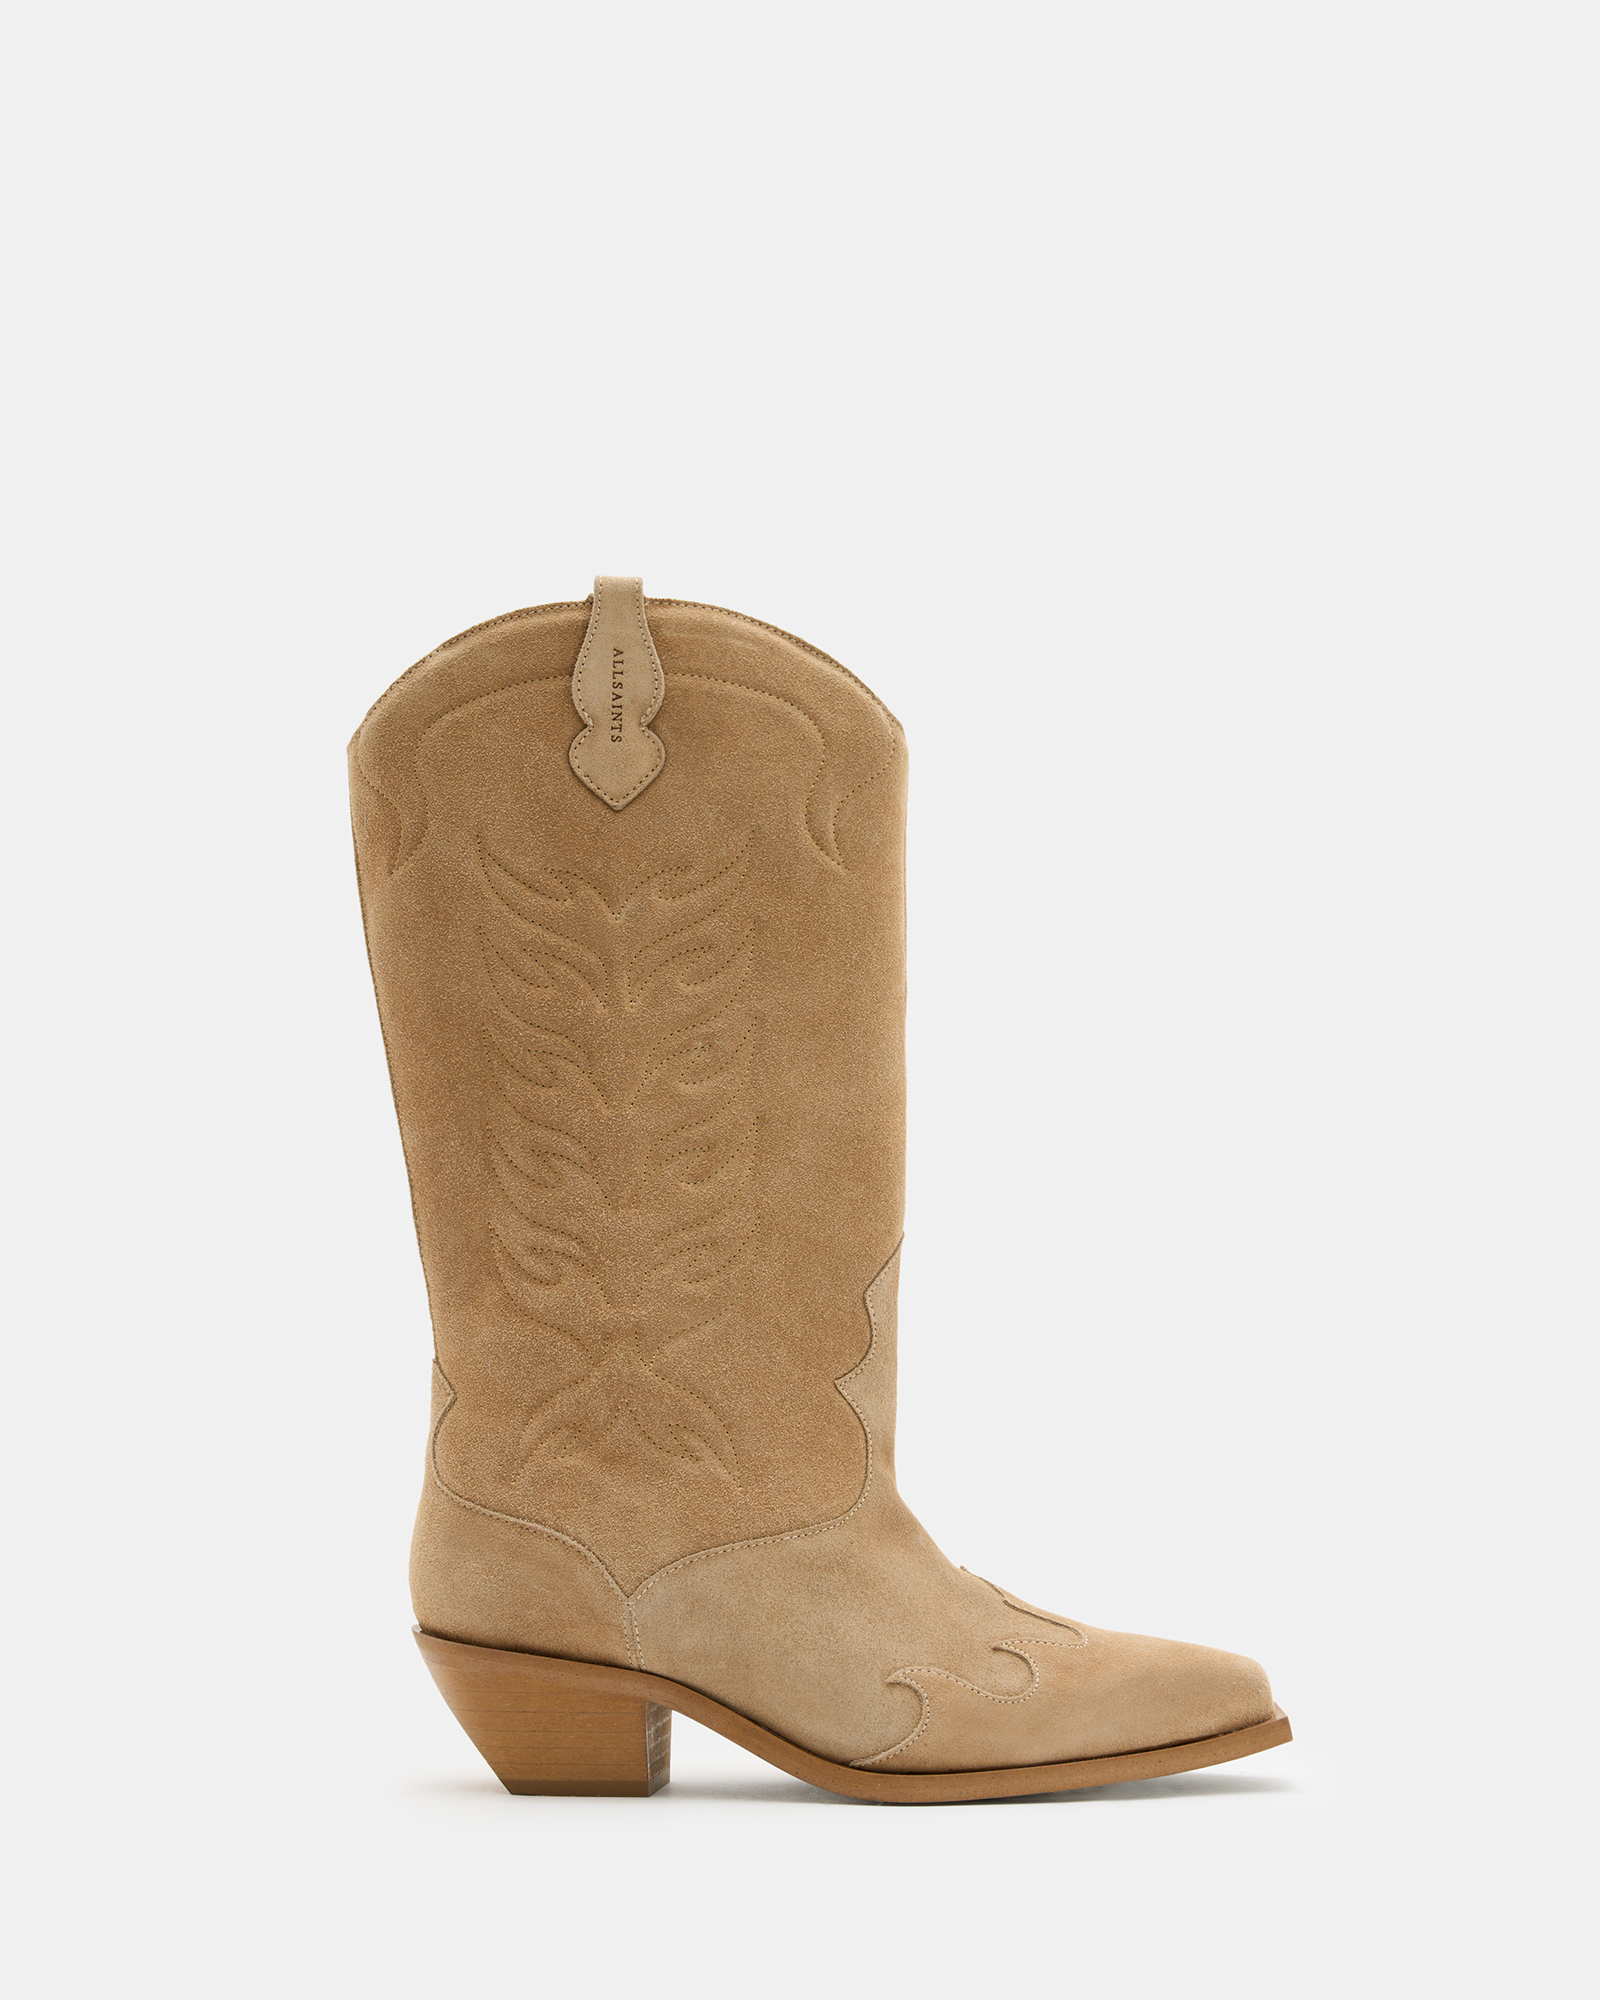 AllSaints Dolly Western Leather Boots,, OAK BEIGE